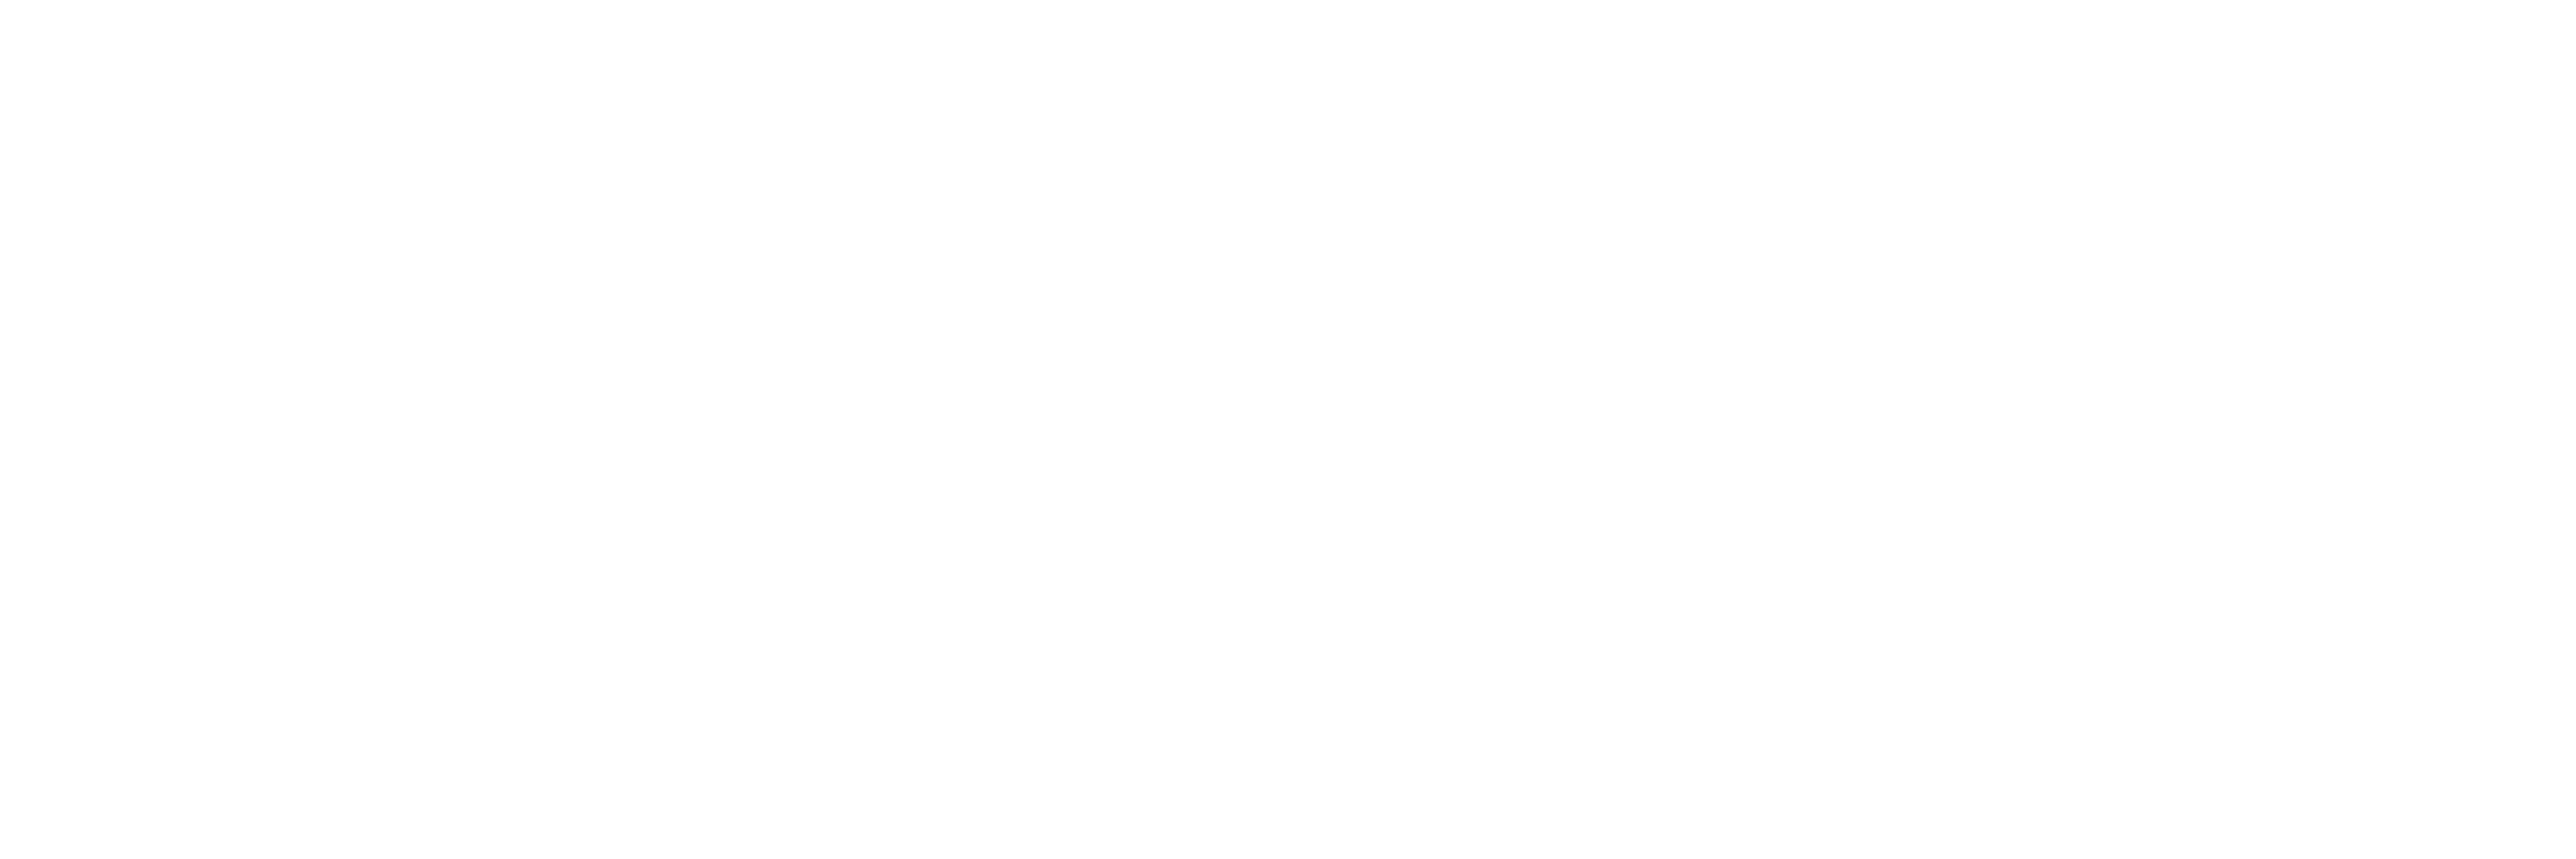 SF Gate Logo